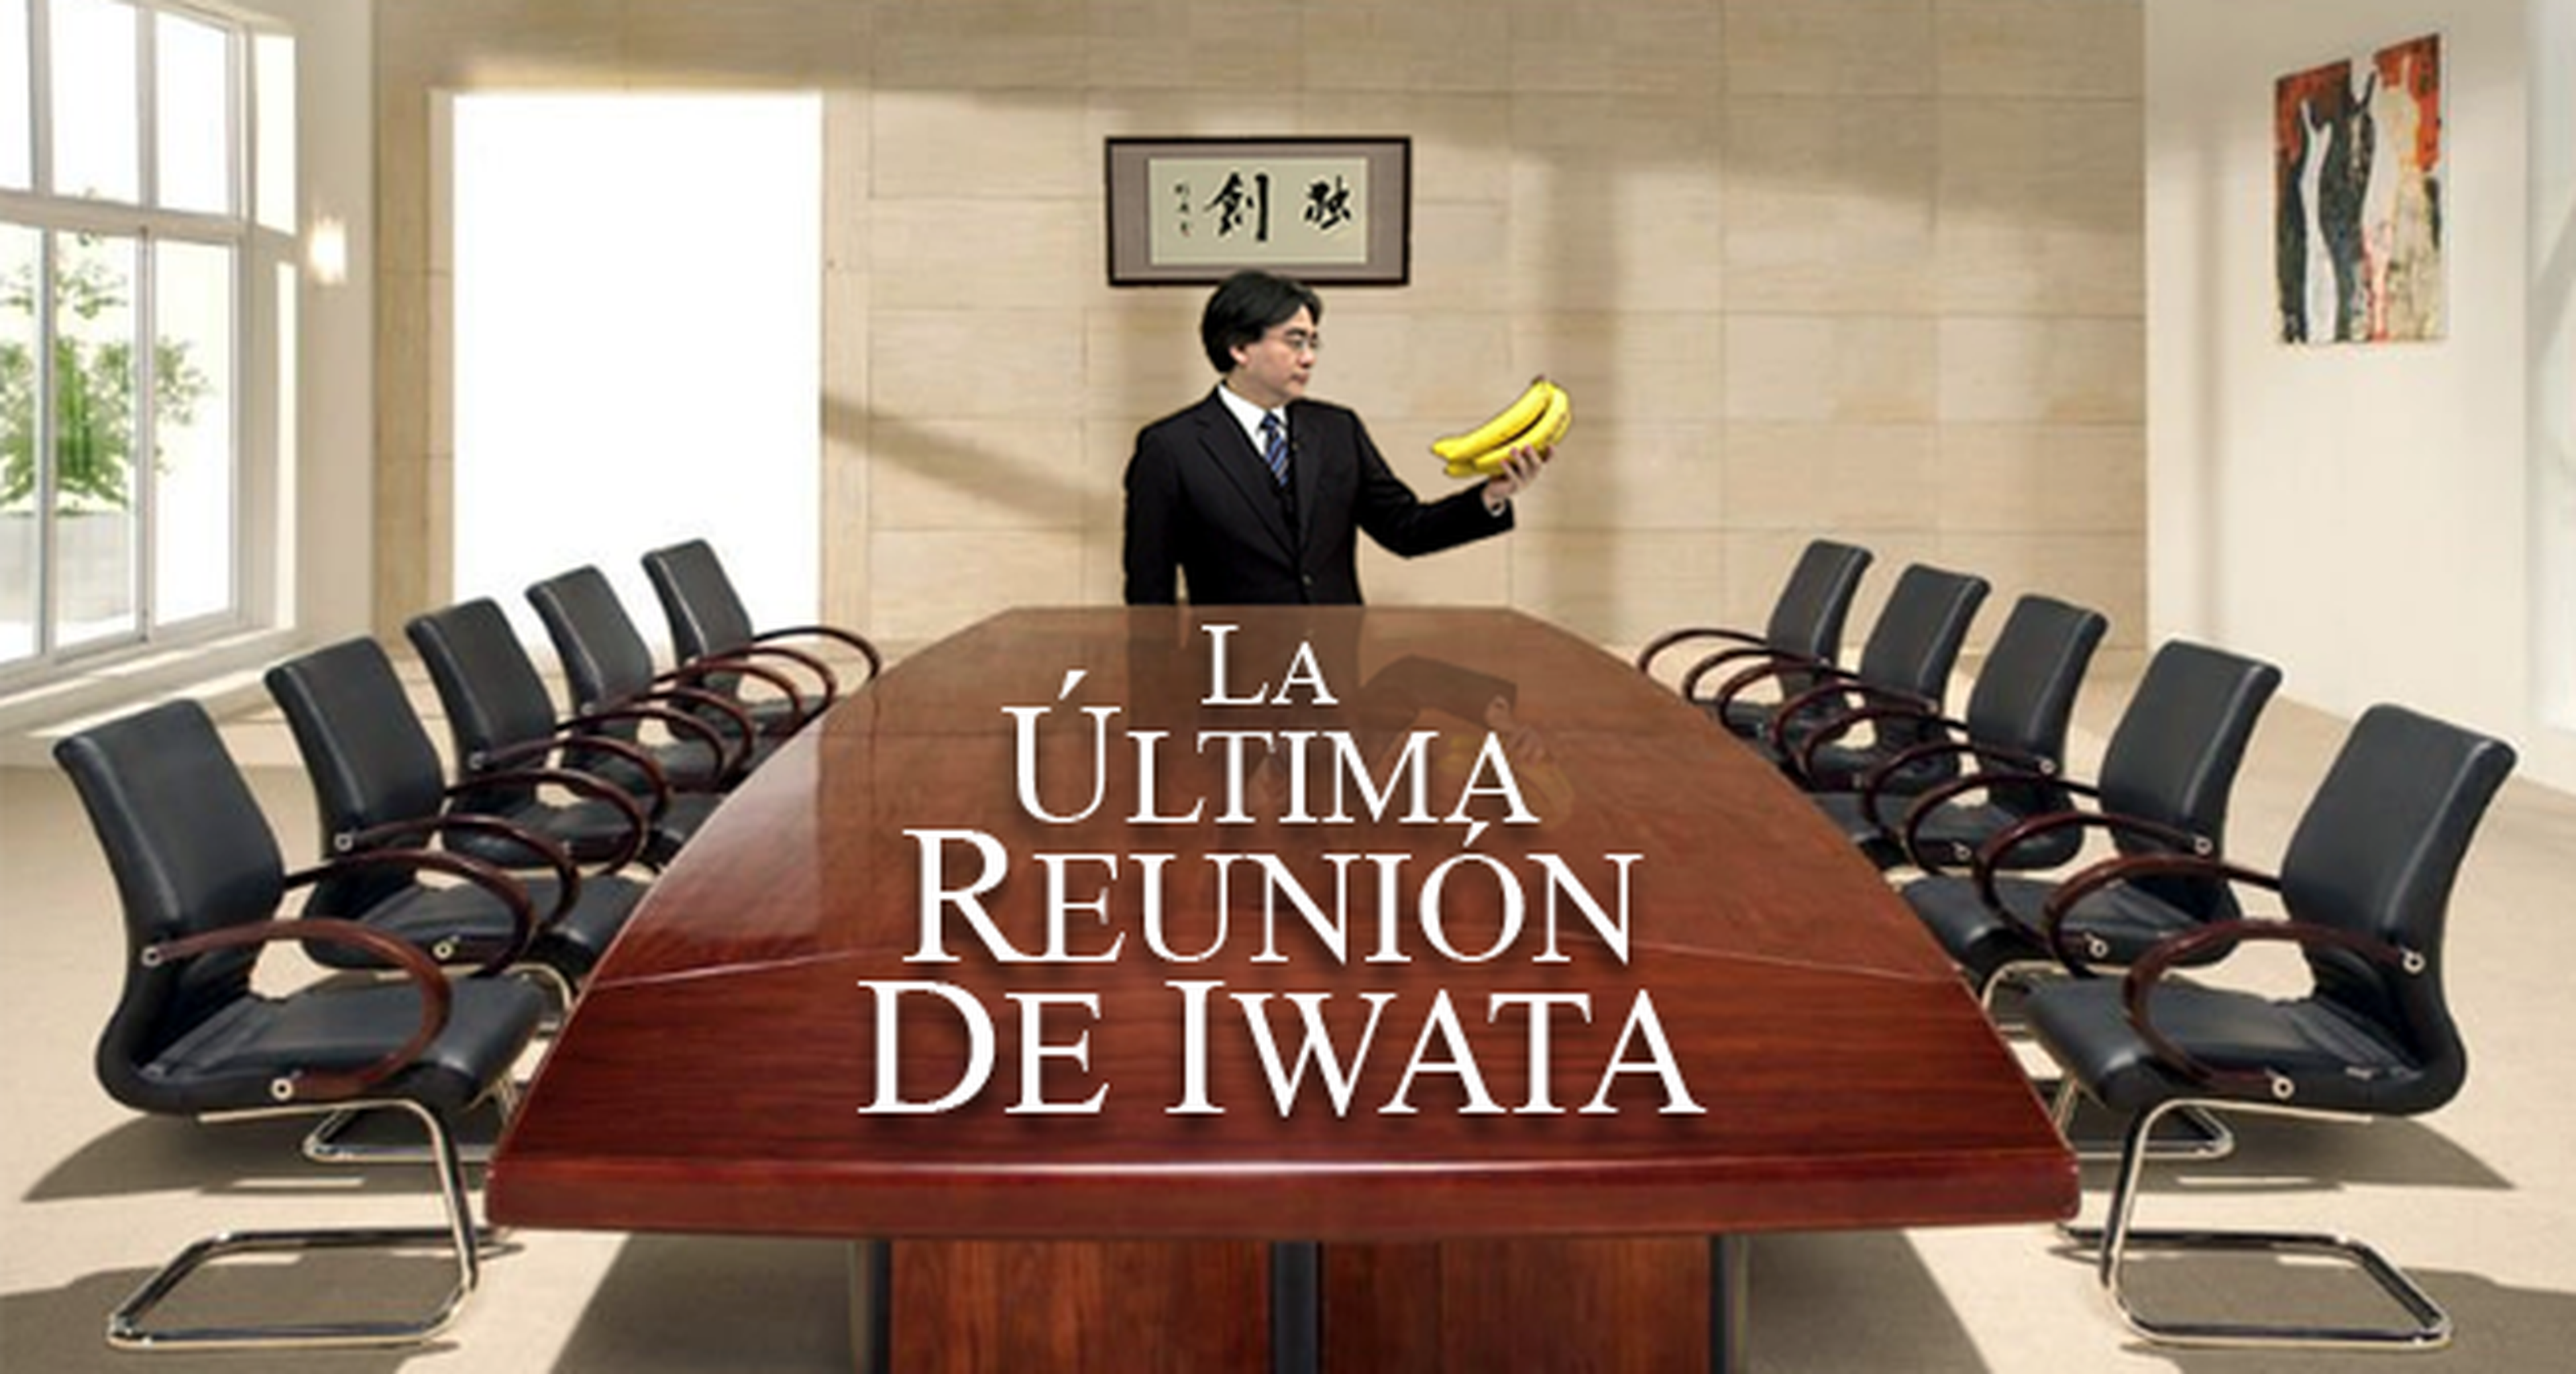 Club Chistendo: La última reunión de Iwata